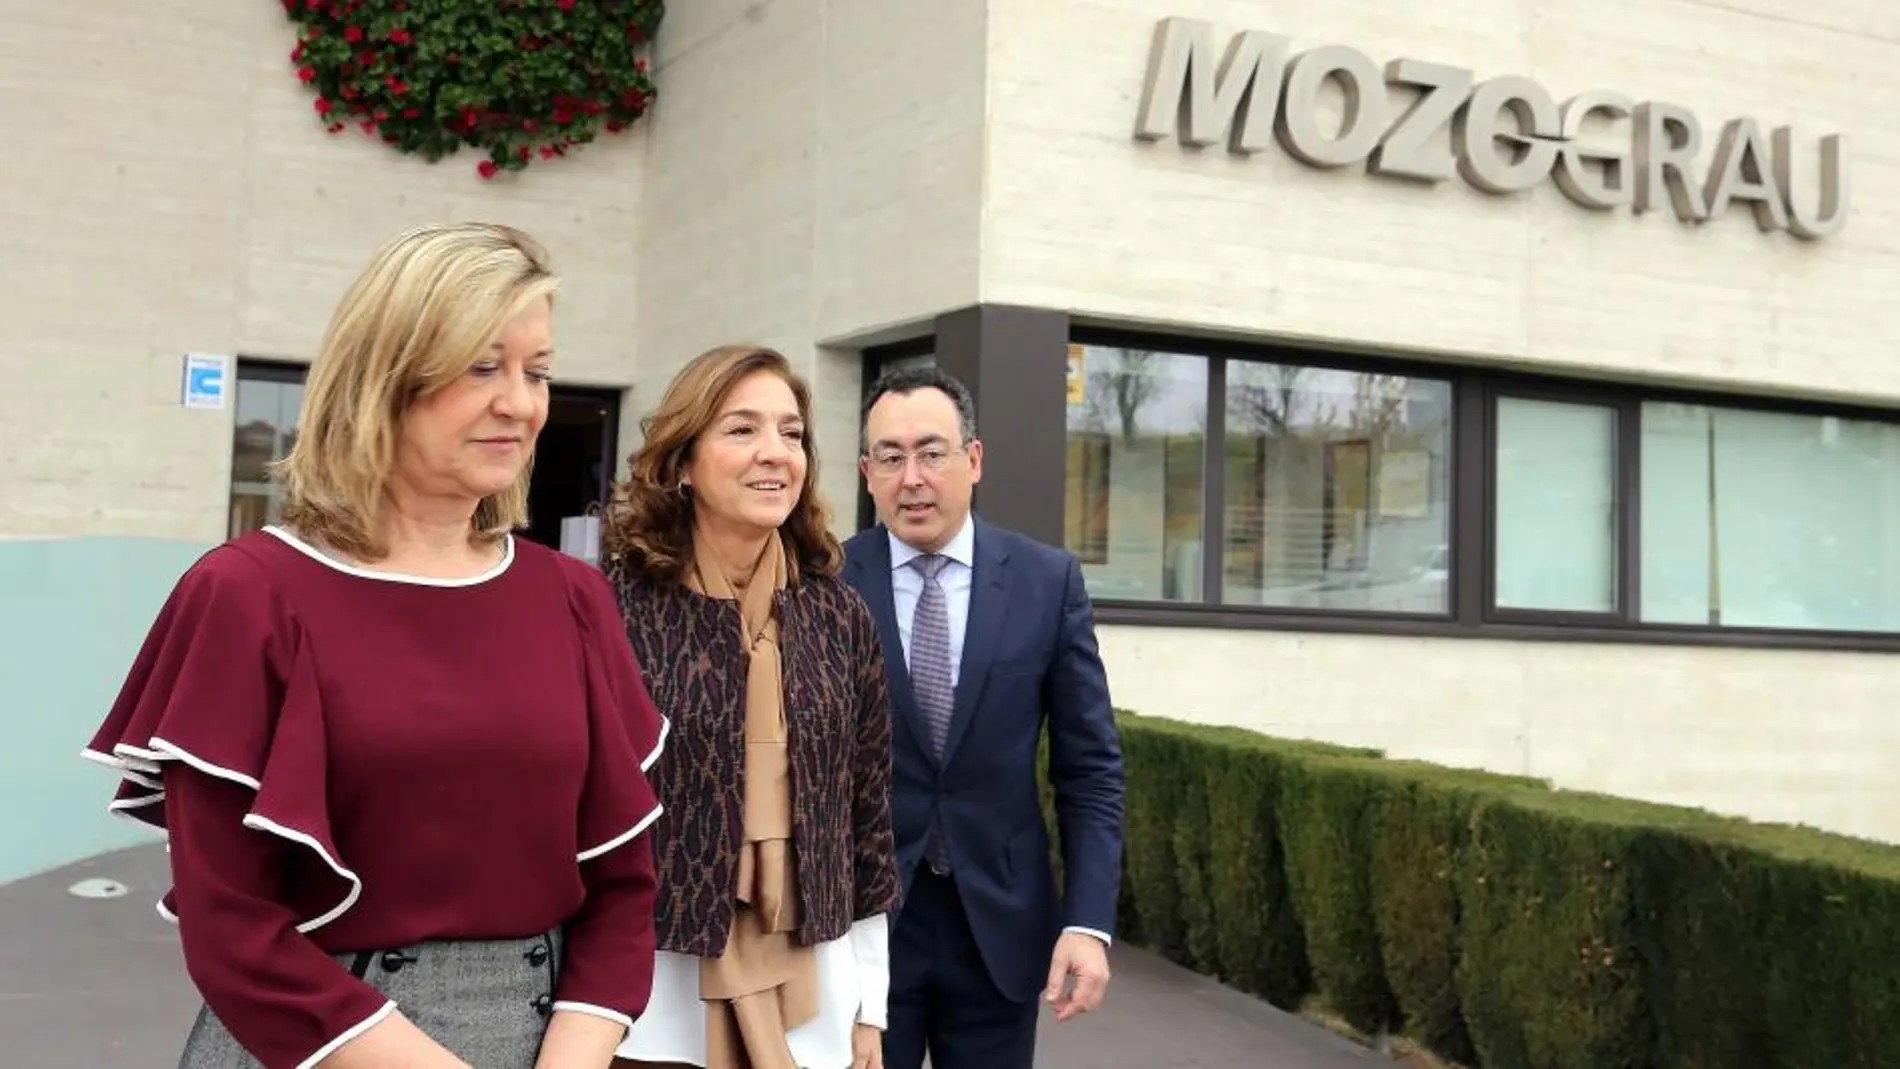 La consejera de Economía y Hacienda, Pilar del Olmo, y la secretaria de Estado de I+D+i, Carmen Vela, visitan la empresa vallisoletana Mozo-Grau